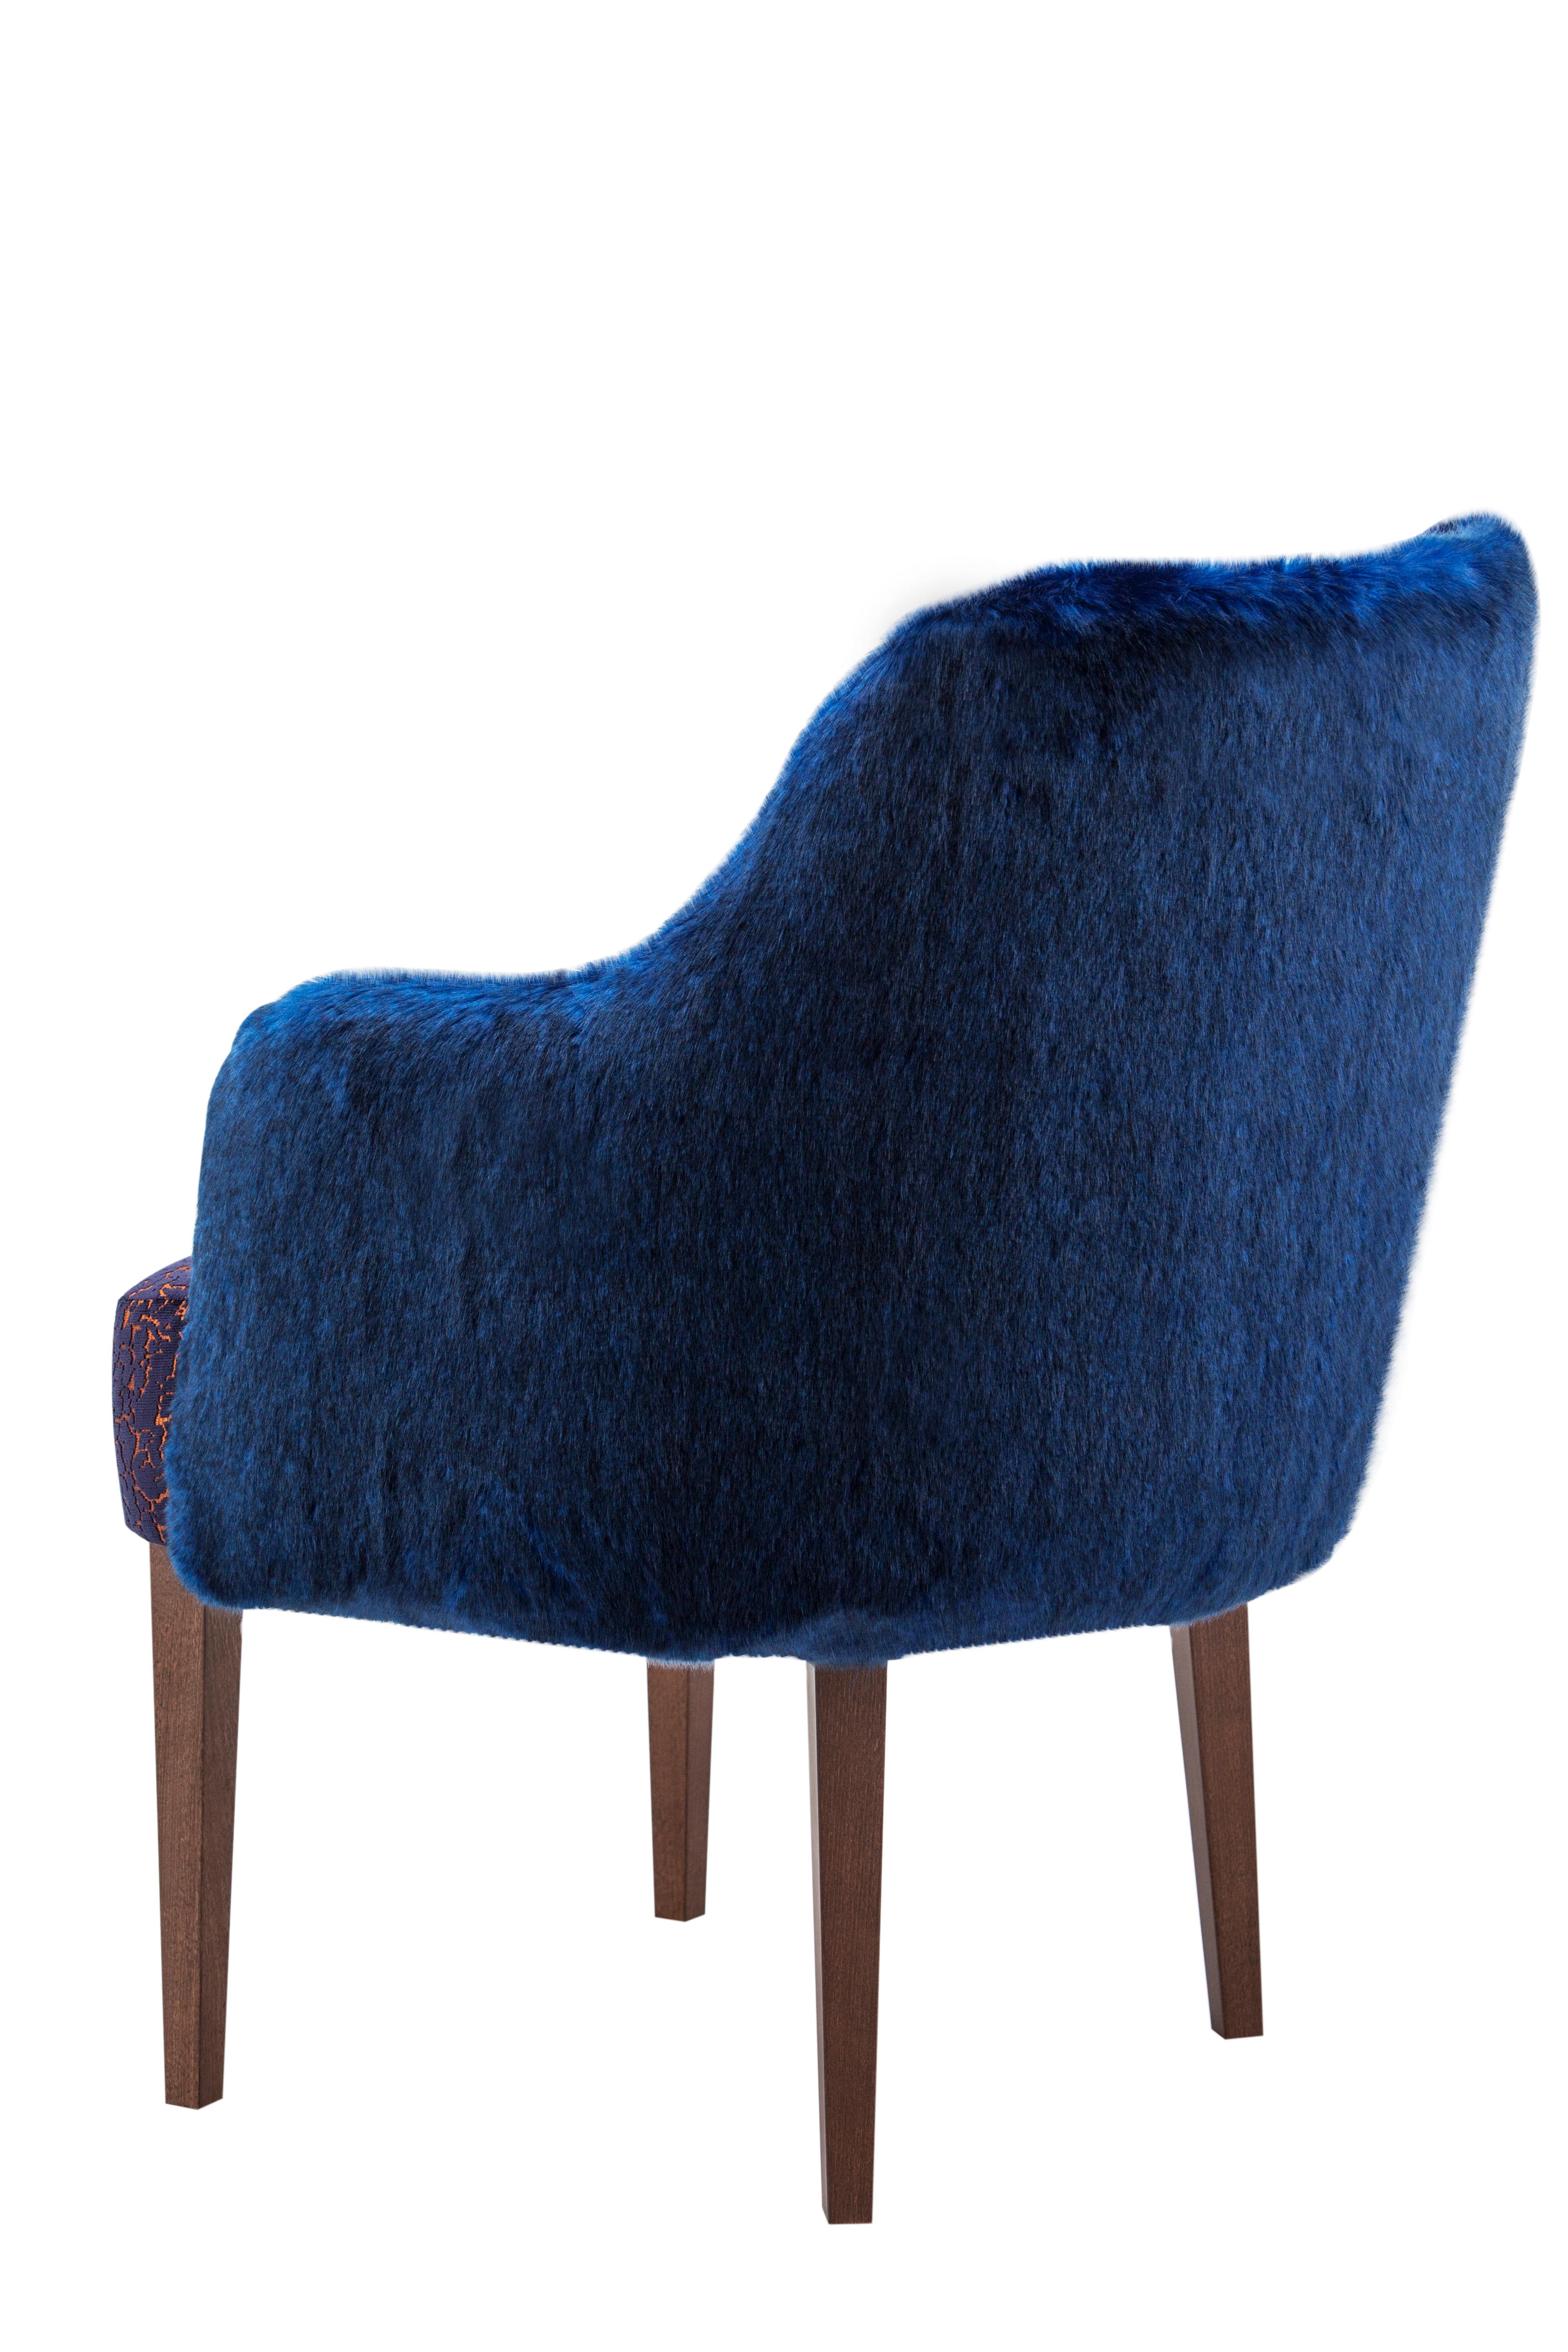 Chaise Margot, collection moderne, fabriquée à la main au Portugal - Europe par GF Modern.

La chaise de salle à manger en fourrure Margot est une pièce art déco qui redéfinit les normes de la vie moderne. L'interaction de lignes douces et